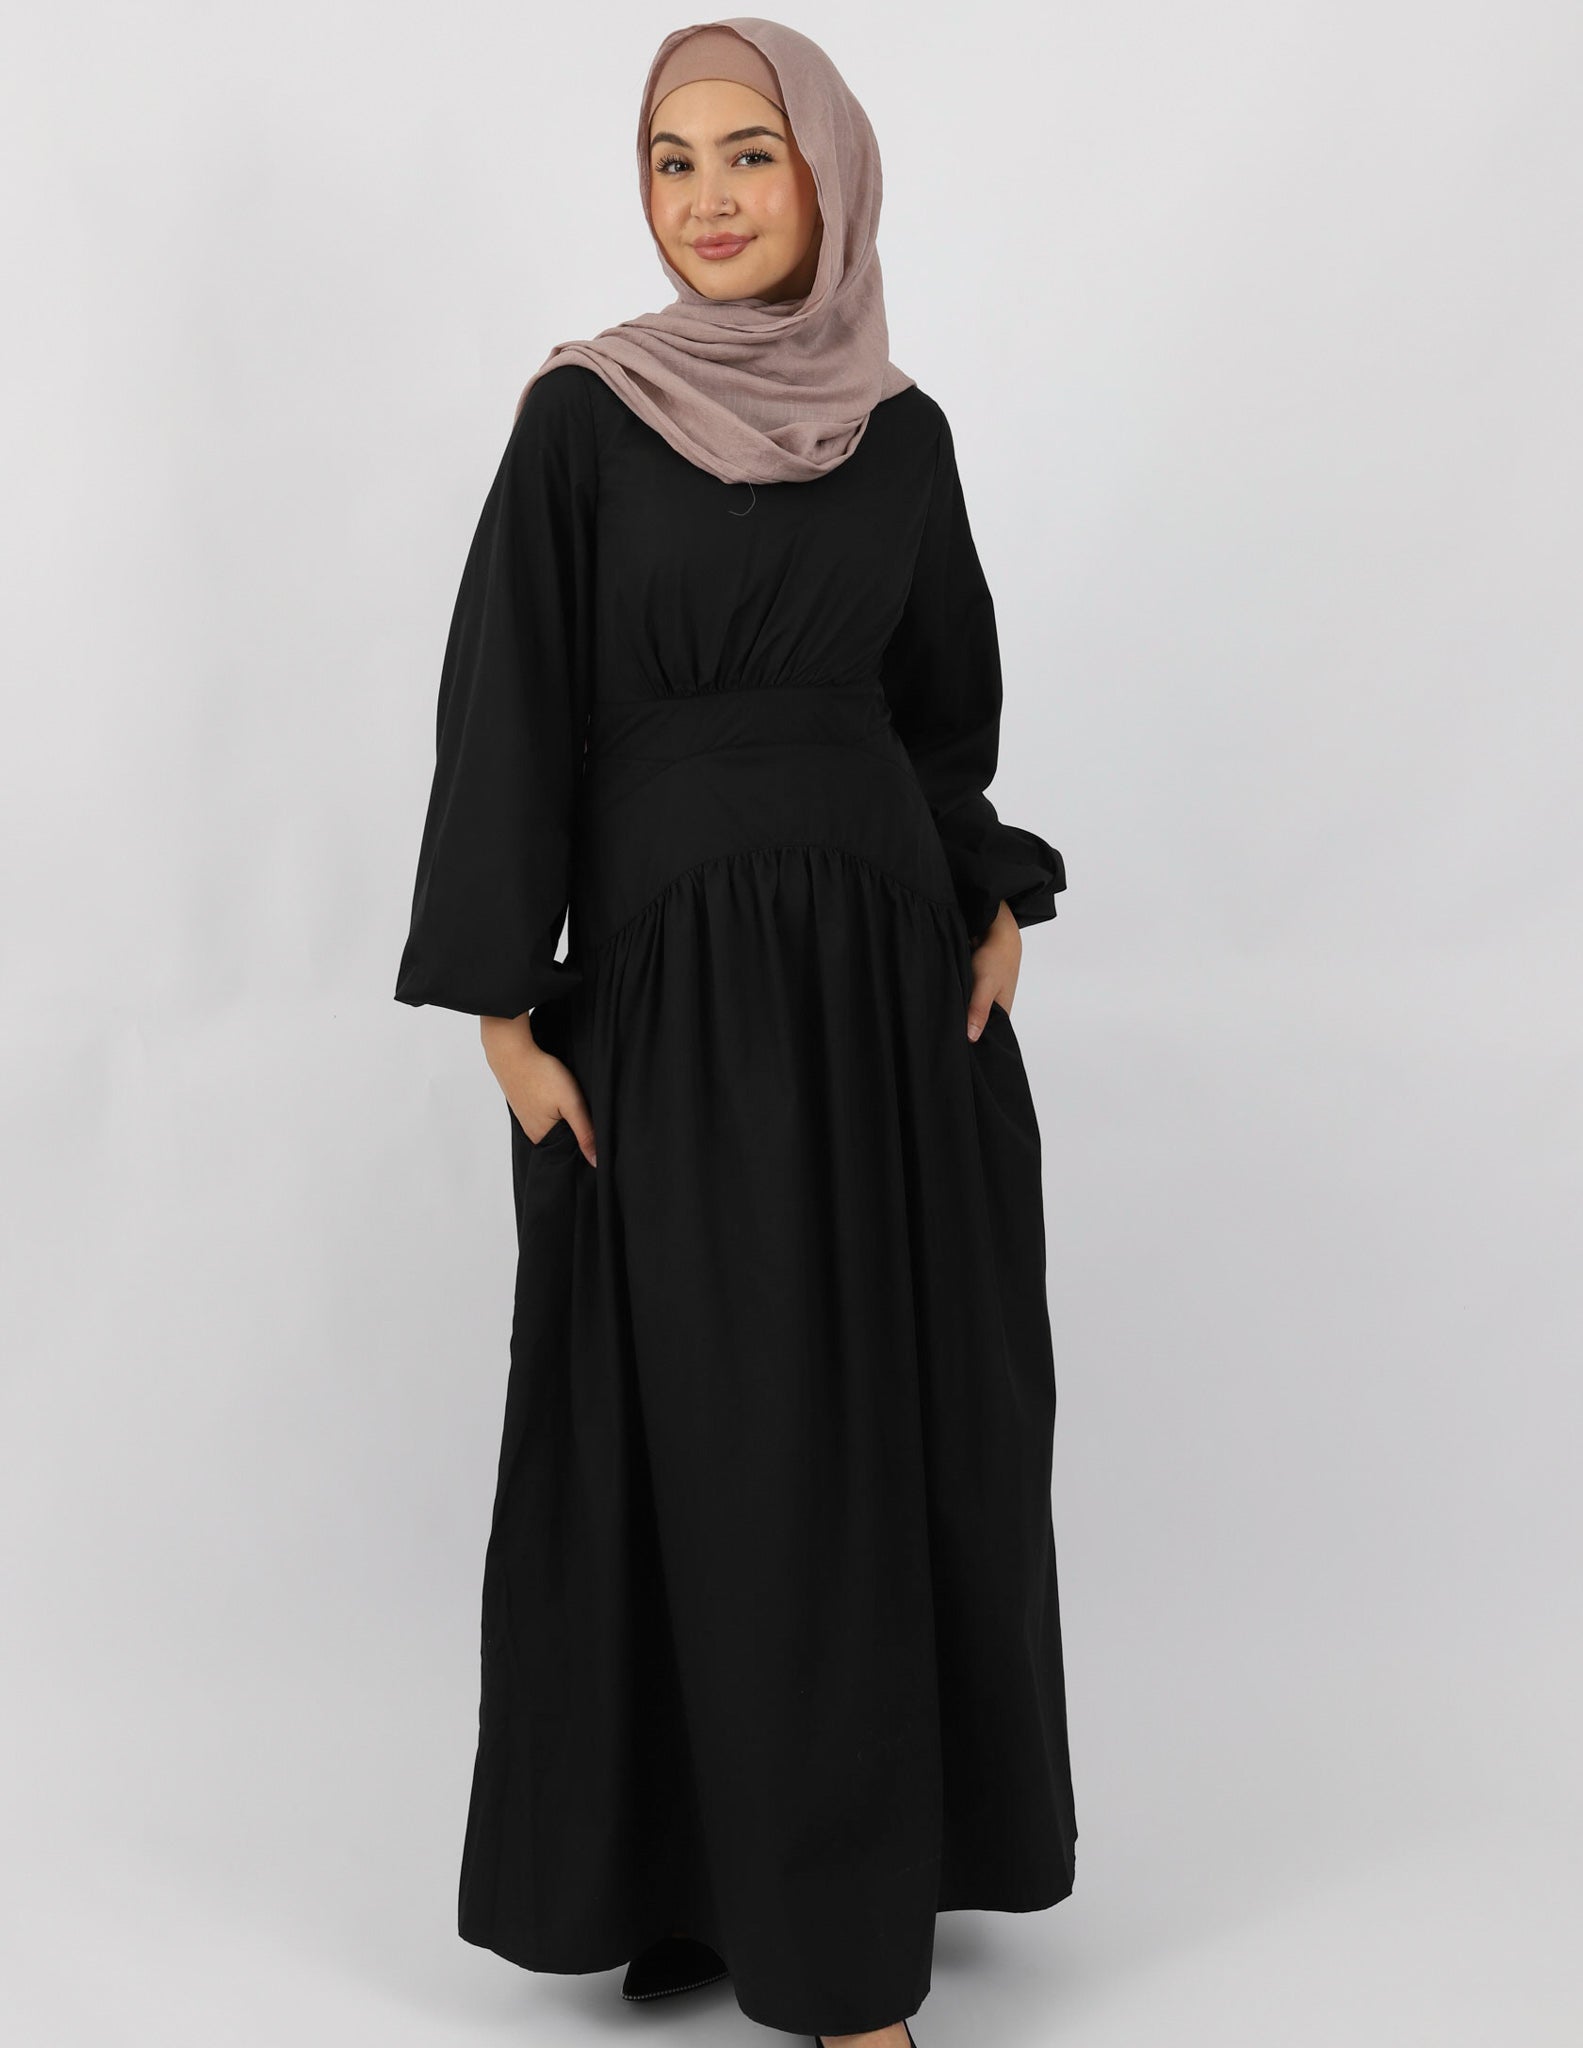 M7771Black-dress-abaya